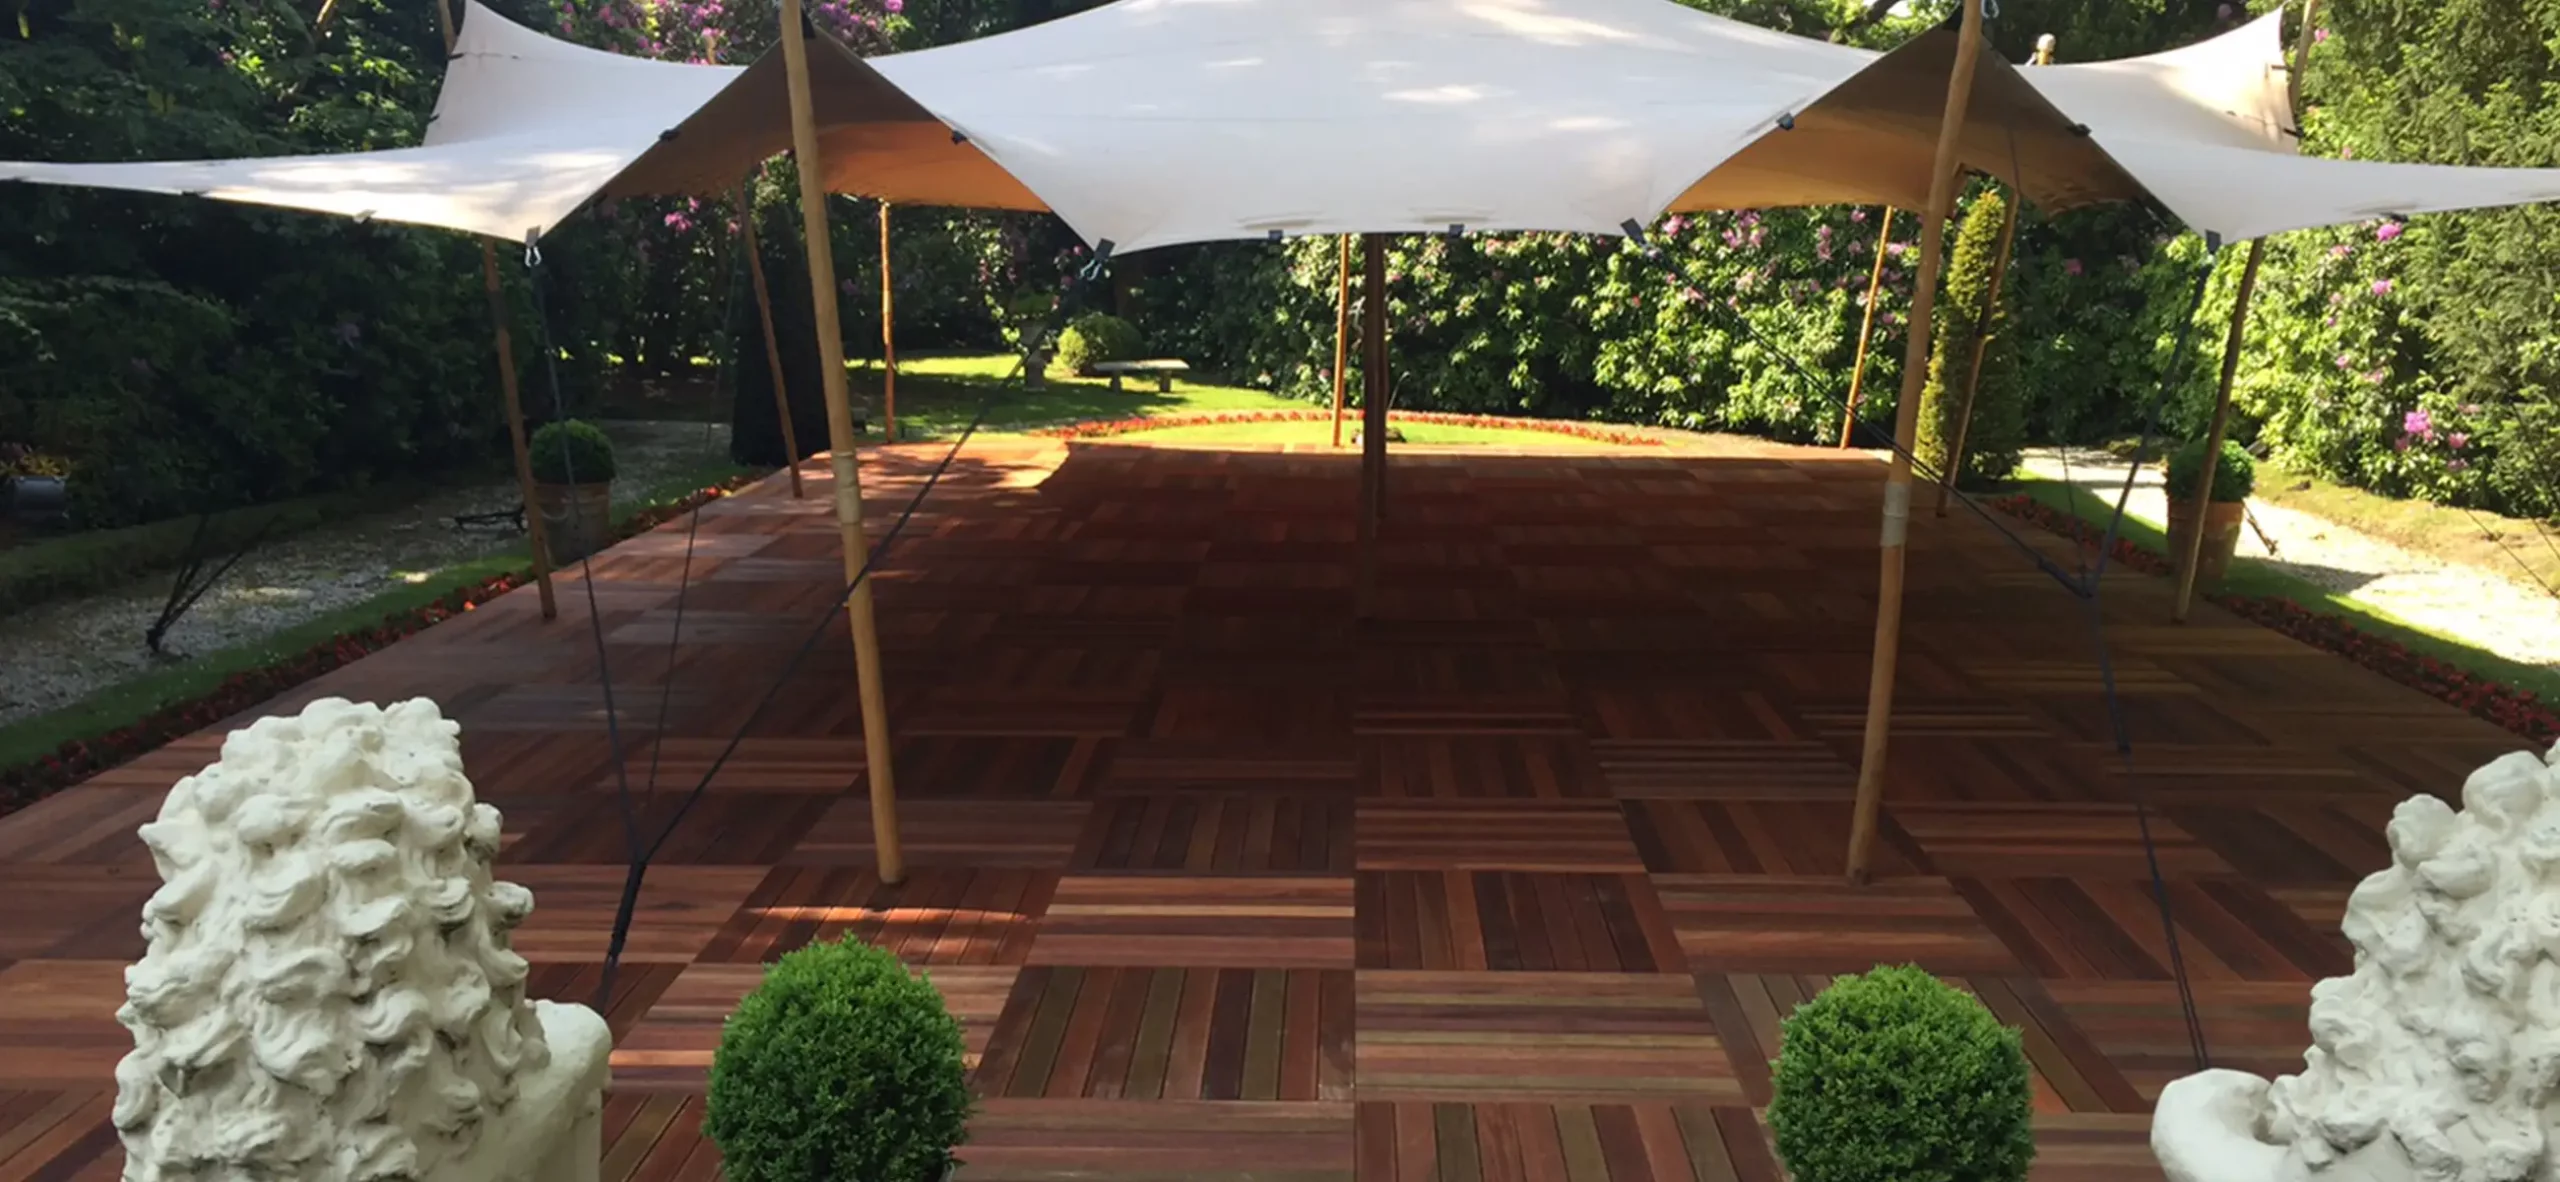 Stretchzelt auf Bankirai Bodenplatten für Gartenpartys, Sommerfeste, Geburtstage, private Feiern